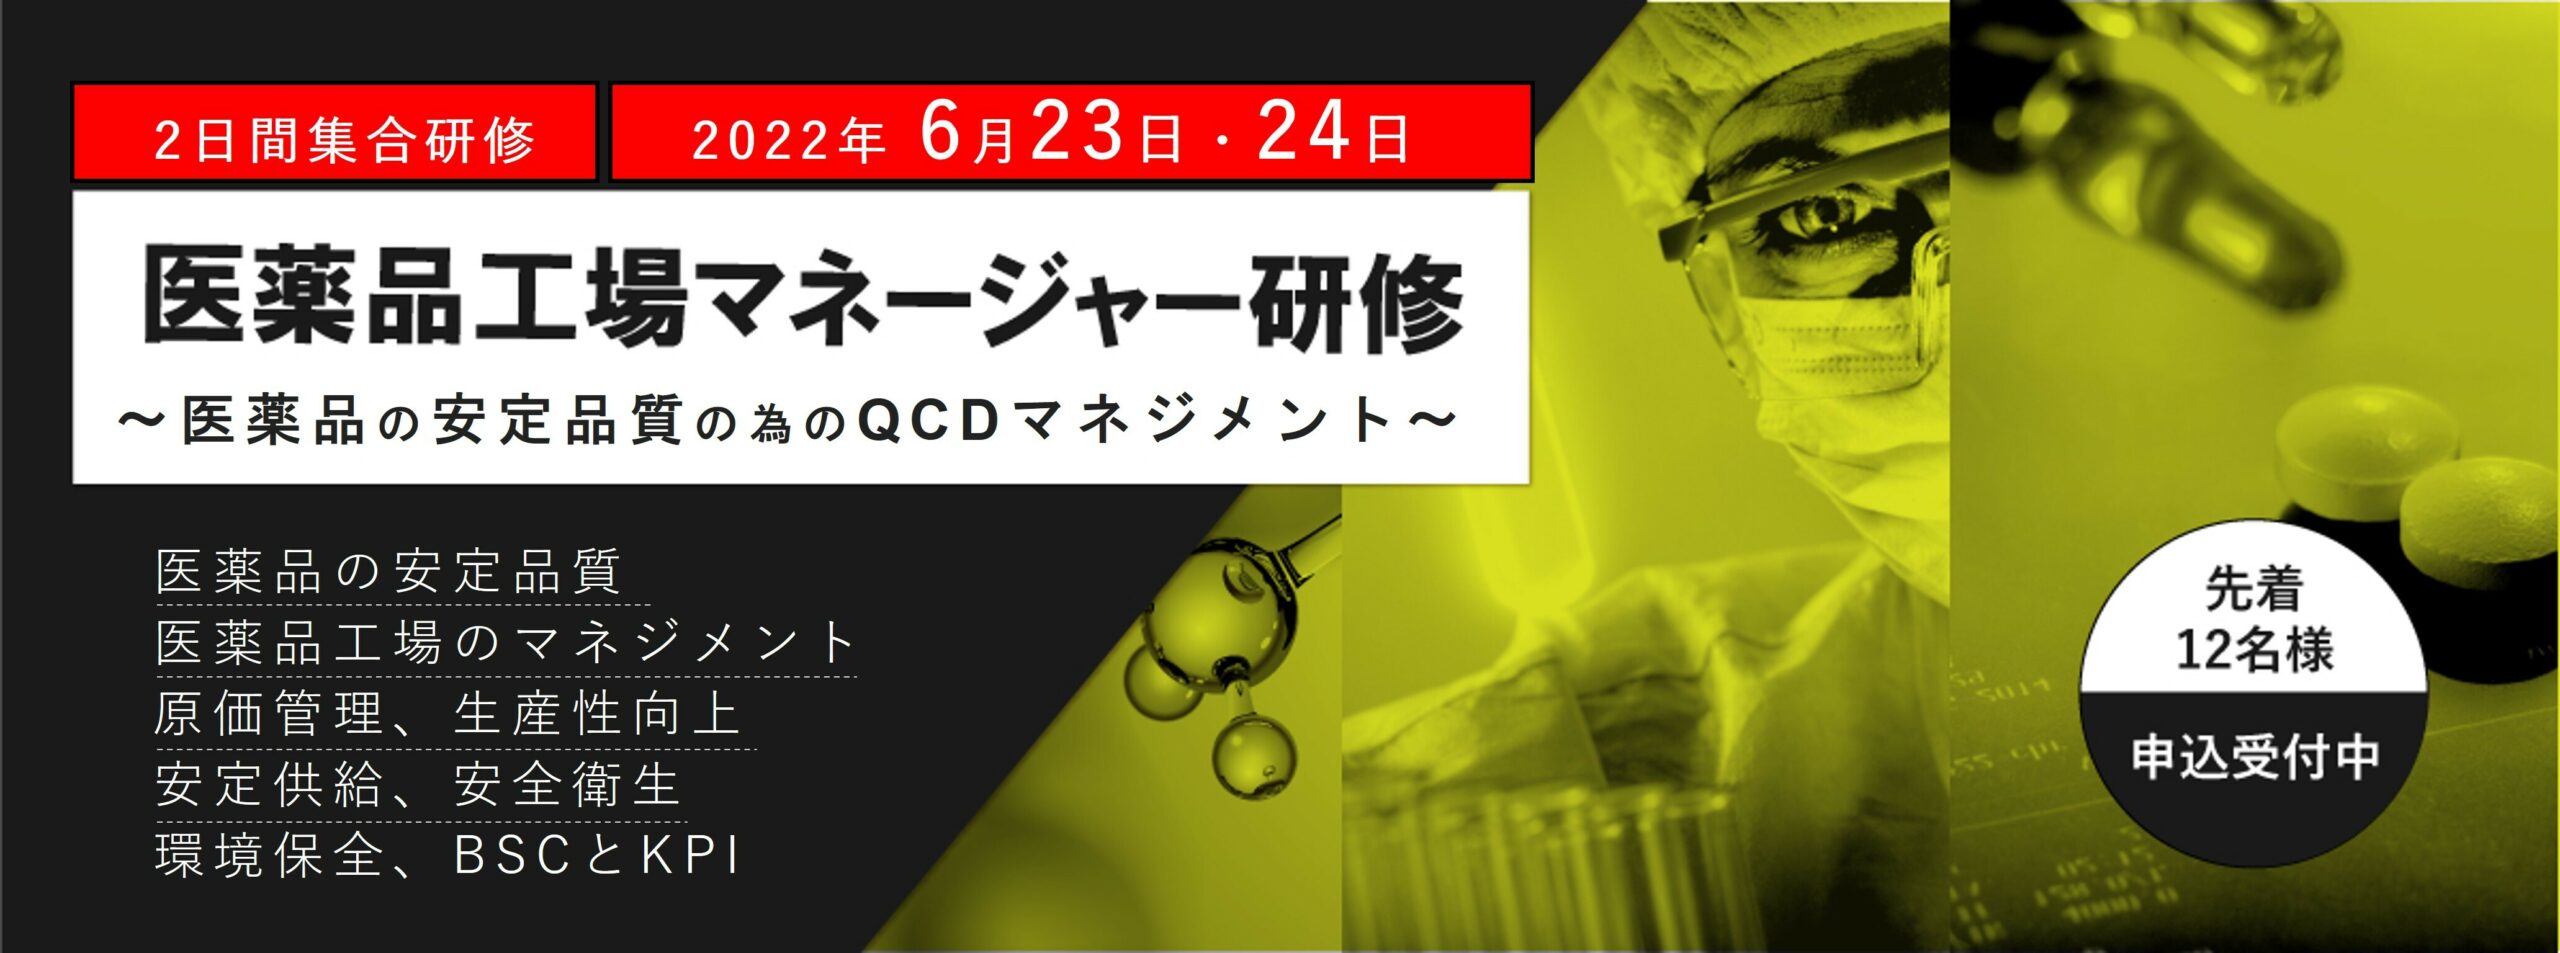 【QCD+受講者特典 割引】医薬品工場マネージャー研修